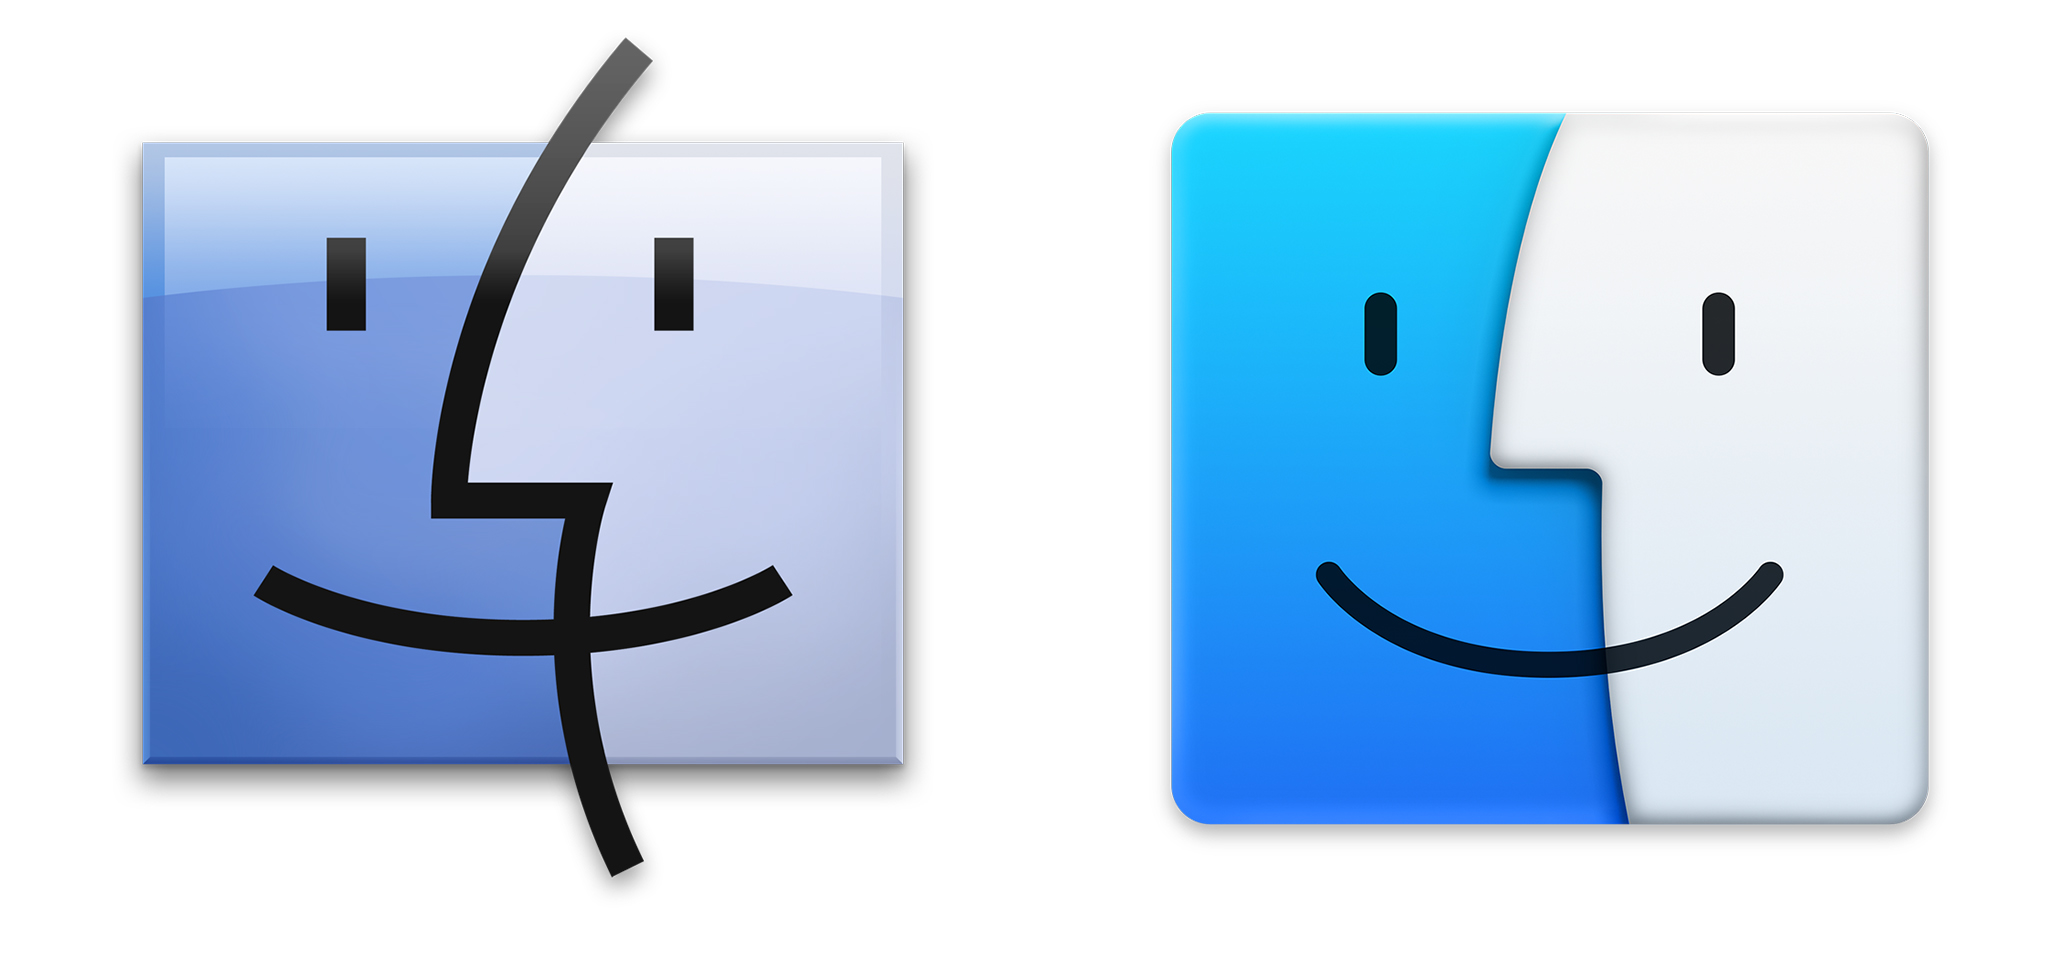 Mac OS X Finder Icon